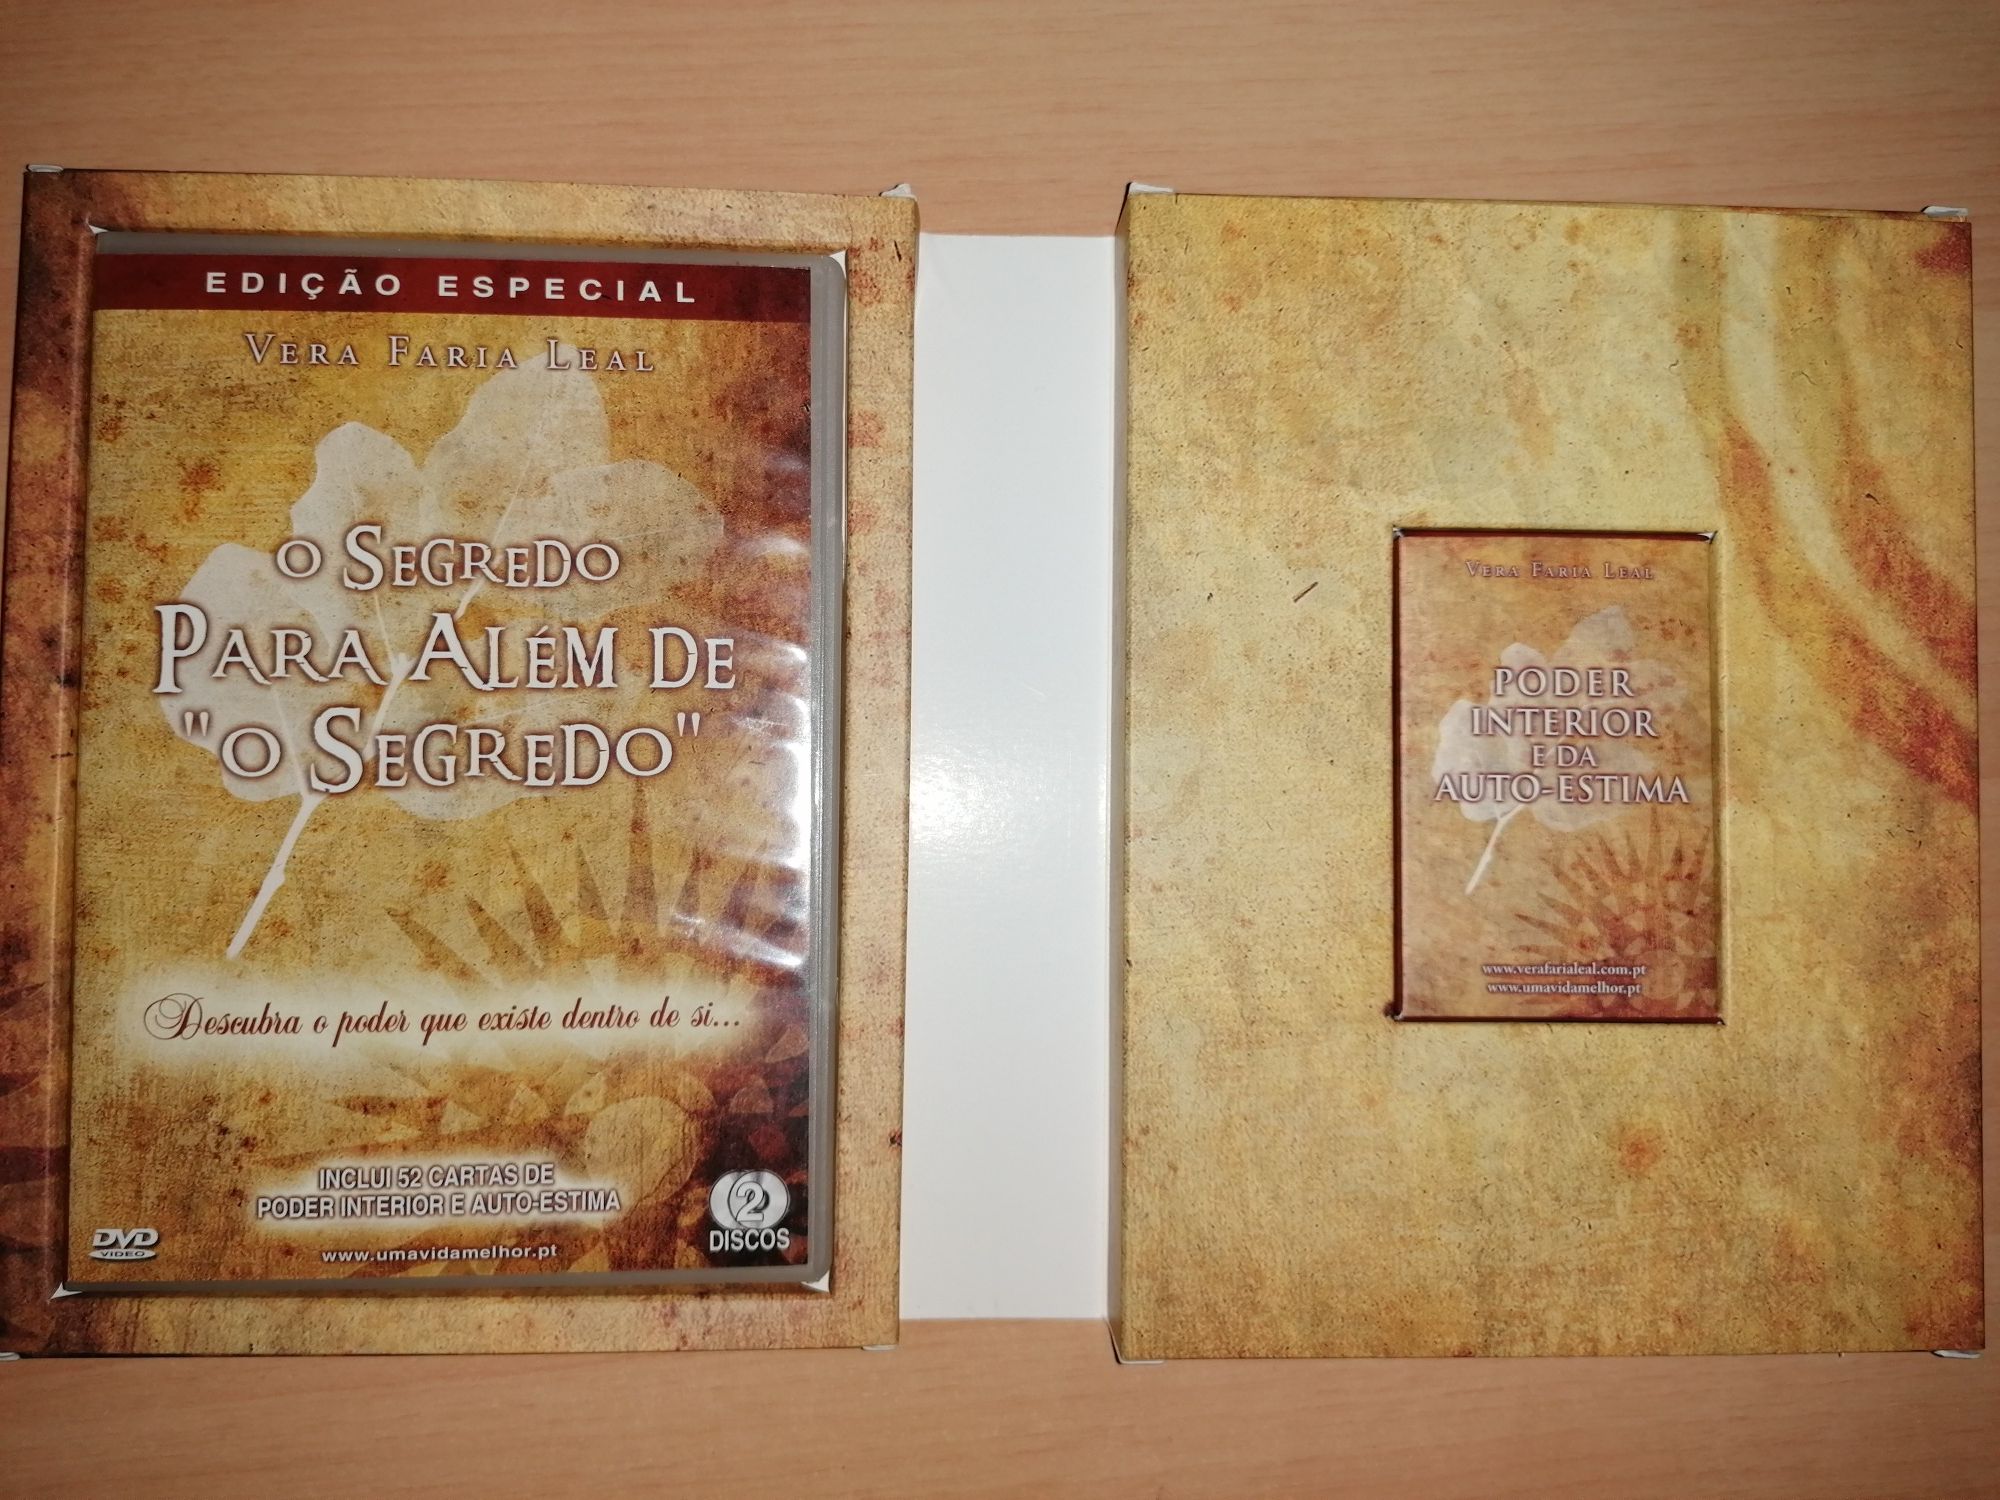 DVD Edição Especial " O Segredo para Além de " O Segredo"" (Como Novo)